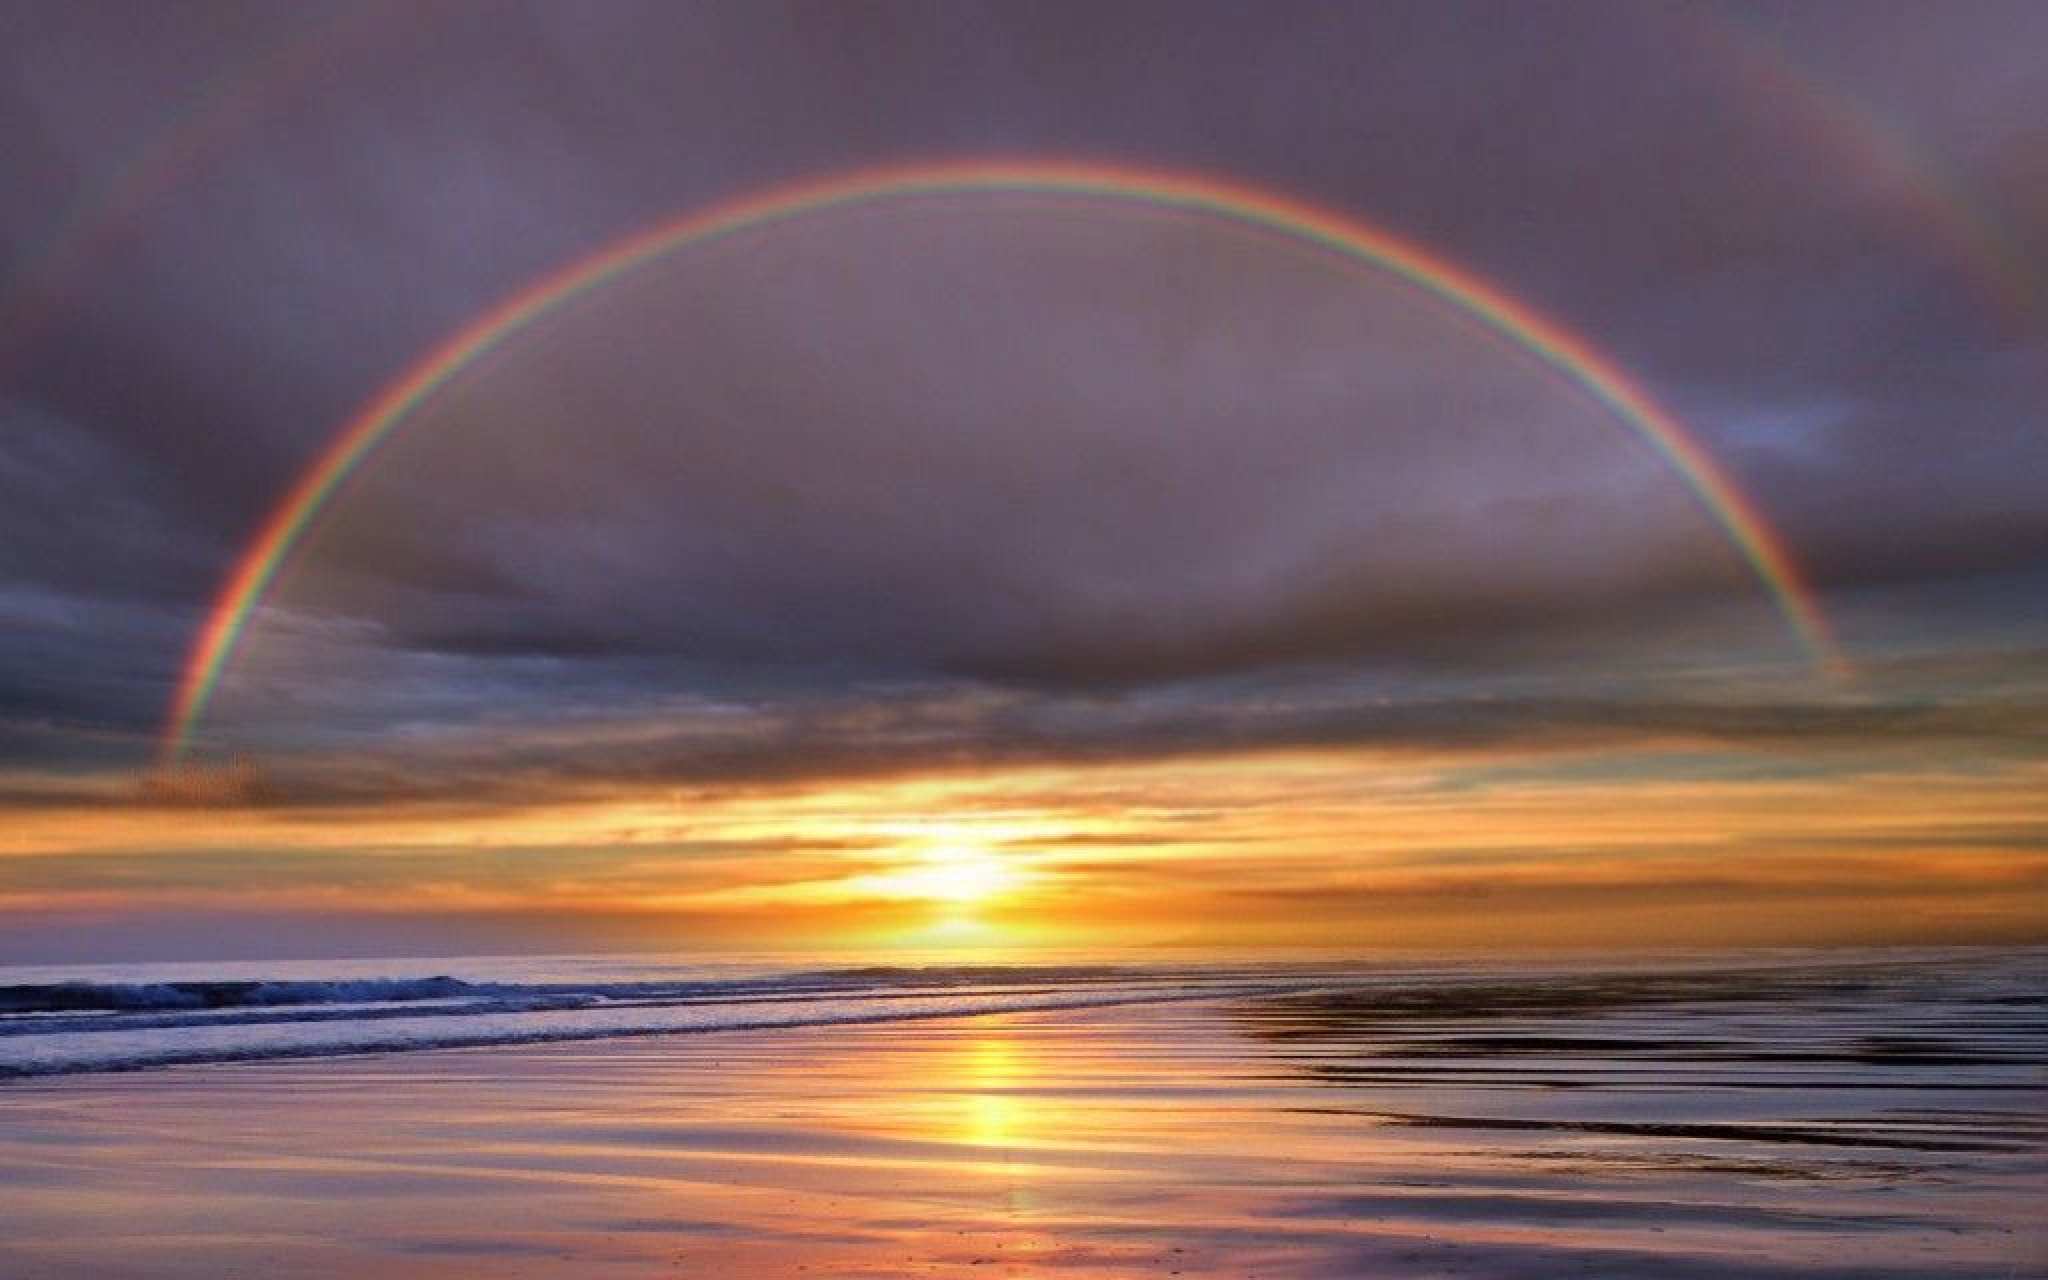 海上彩虹图片大全真实,最美的彩虹在海边图片 - 伤感说说吧